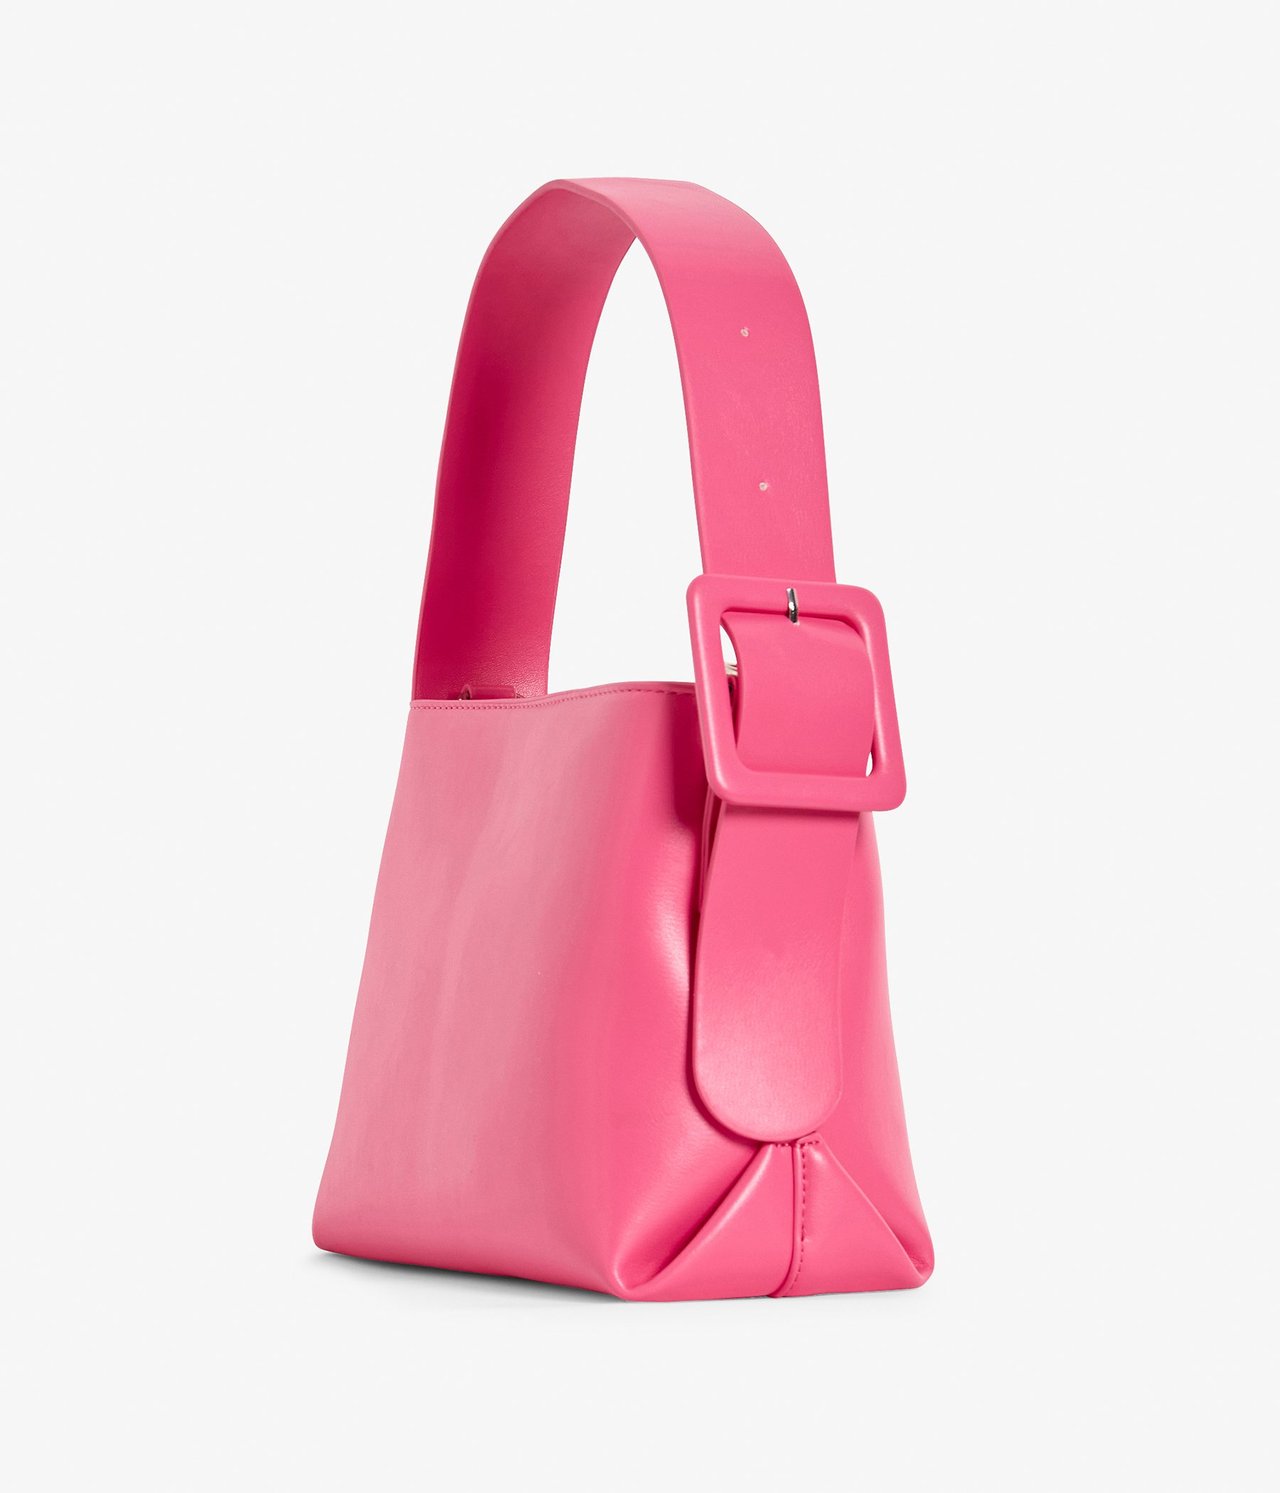 Käsilaukku Pinkki - ONE SIZE - 2